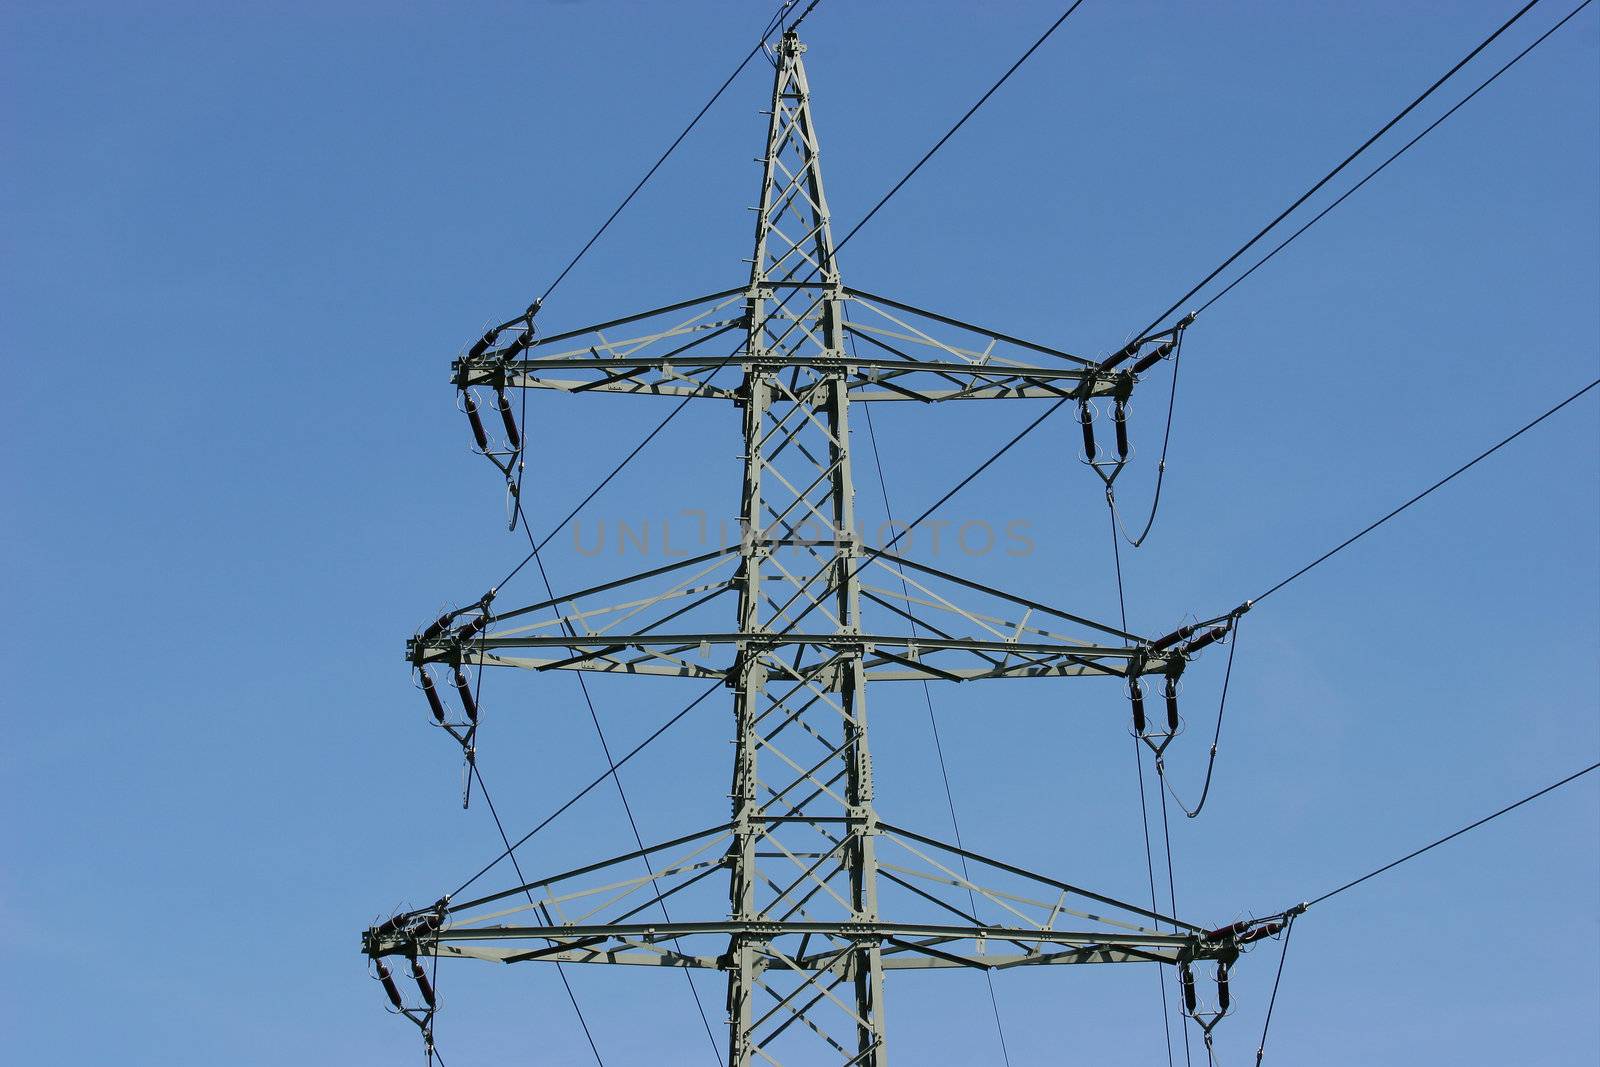 Electricity pylon - view details